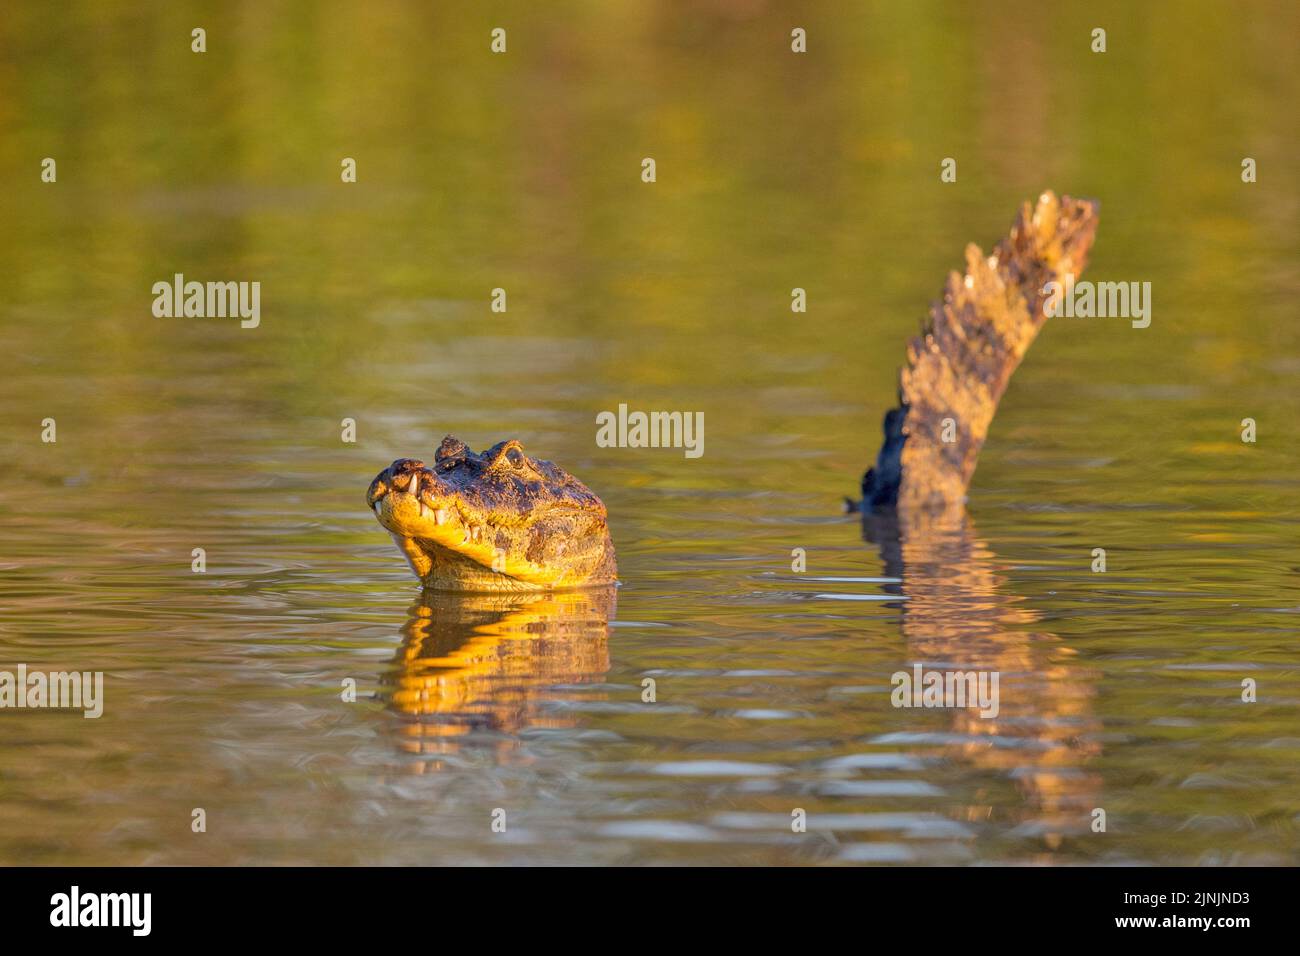 Brillencaiman (Caiman crocodilus), schwimmend im Wasser, Brasilien, Pantanal Stockfoto